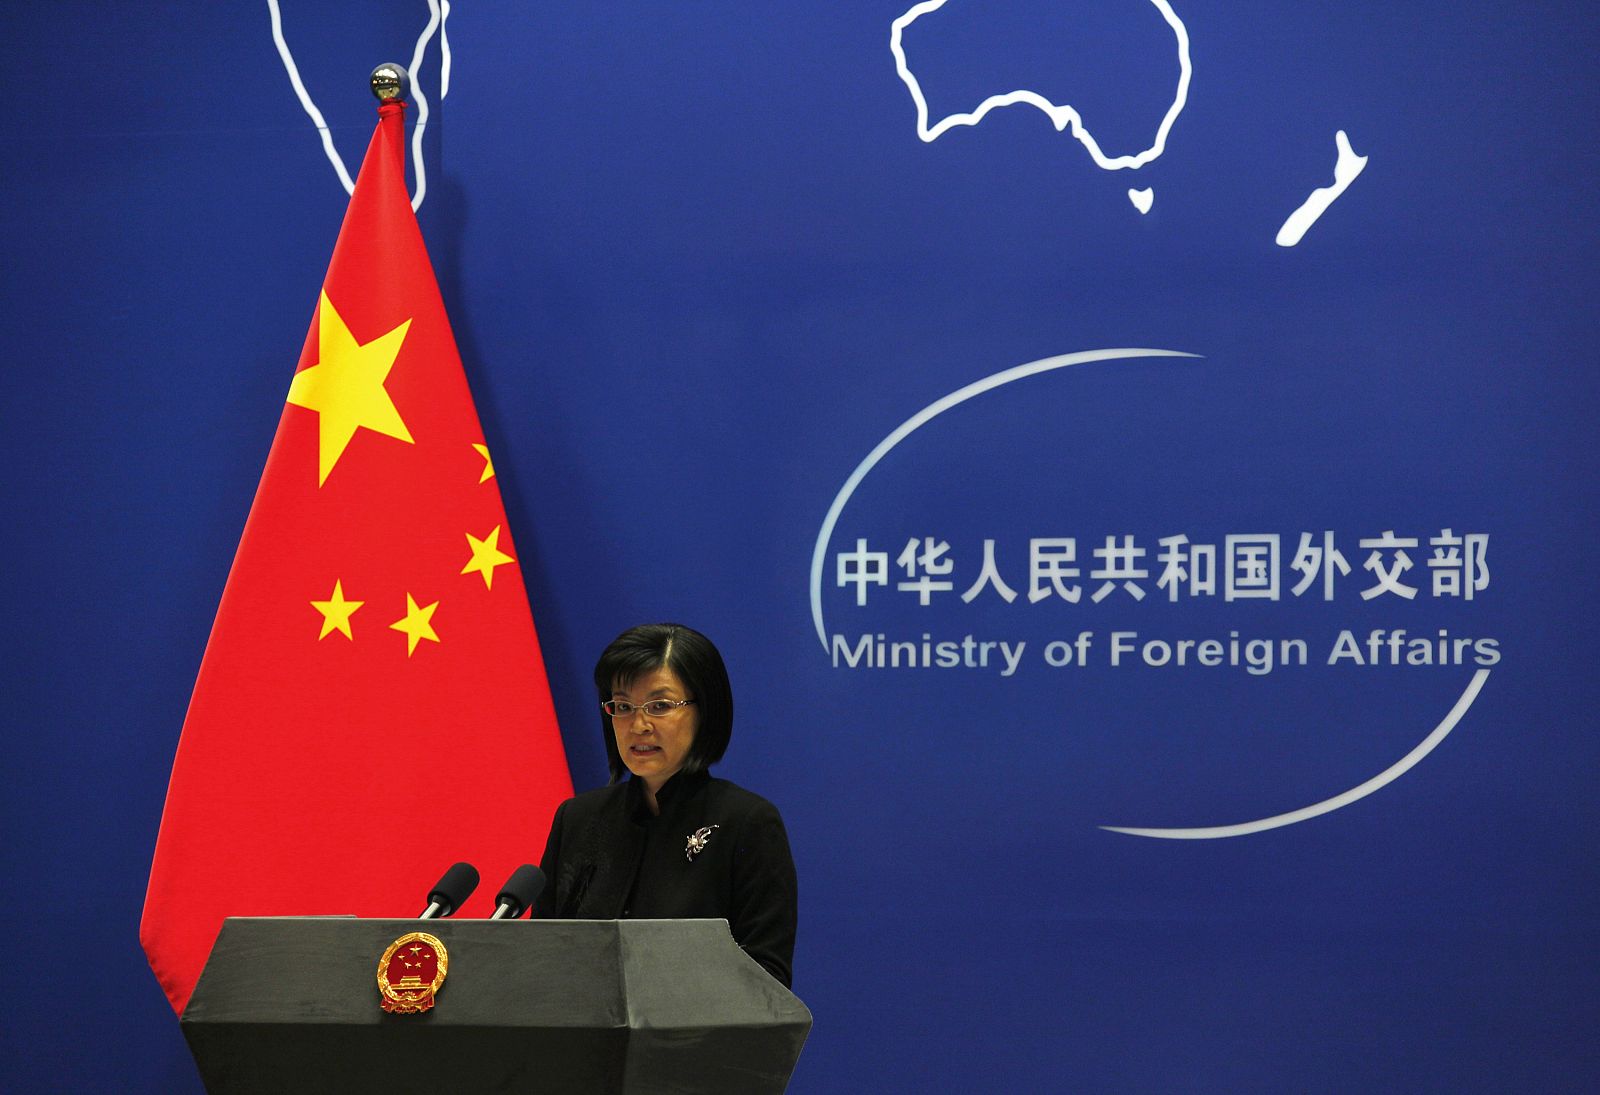 La ministra china Jiang Yu durante su intervención